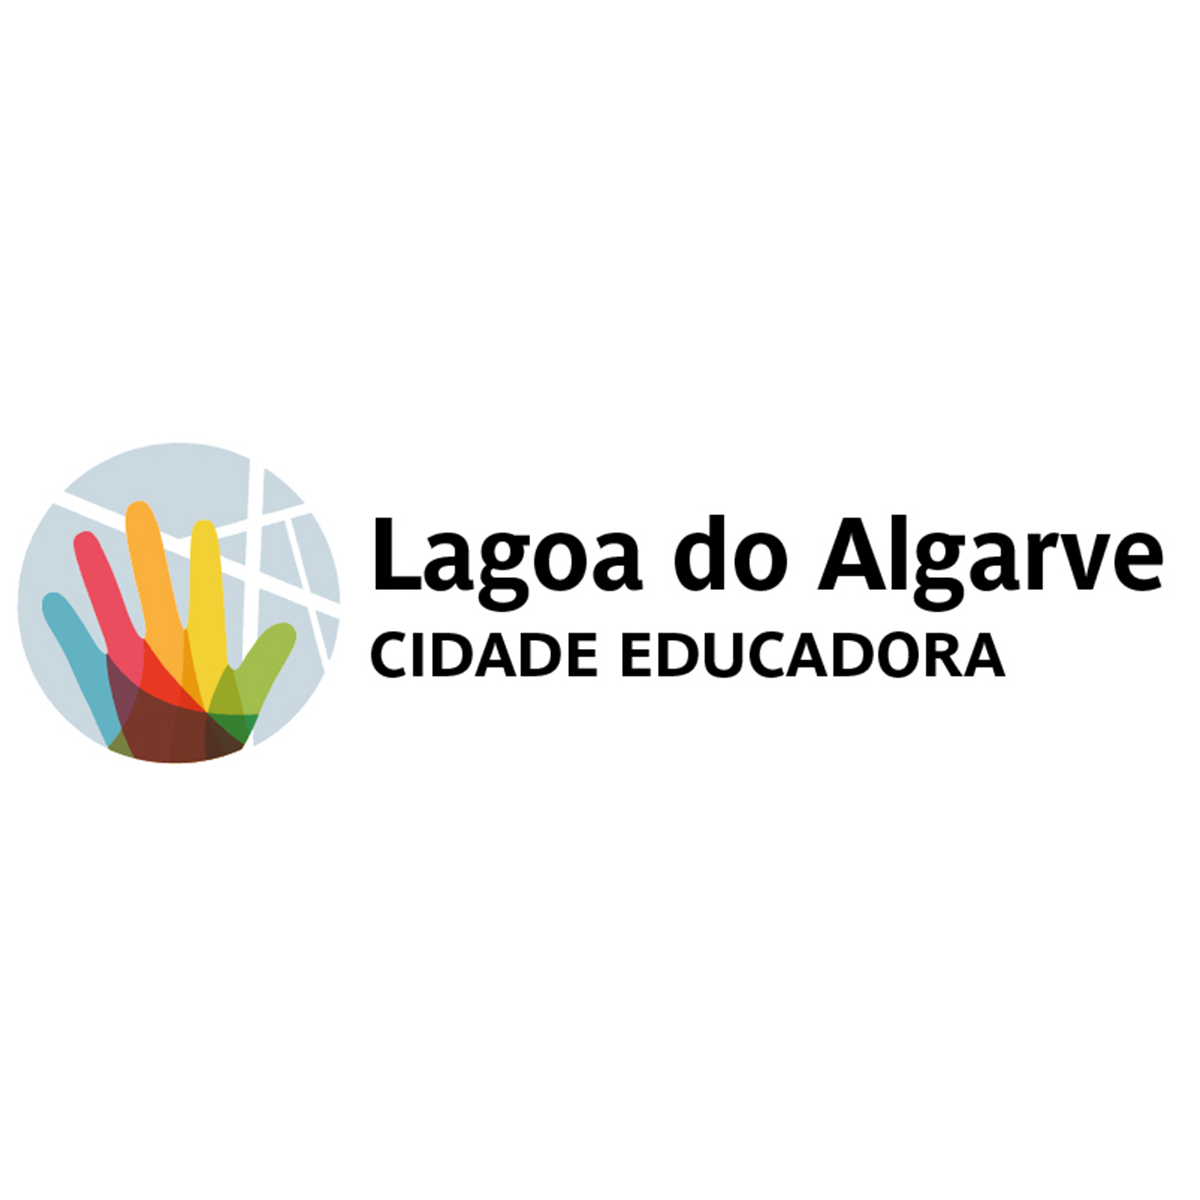 Lagoa investiu cerca de 3,5 milhões na educação em 2022